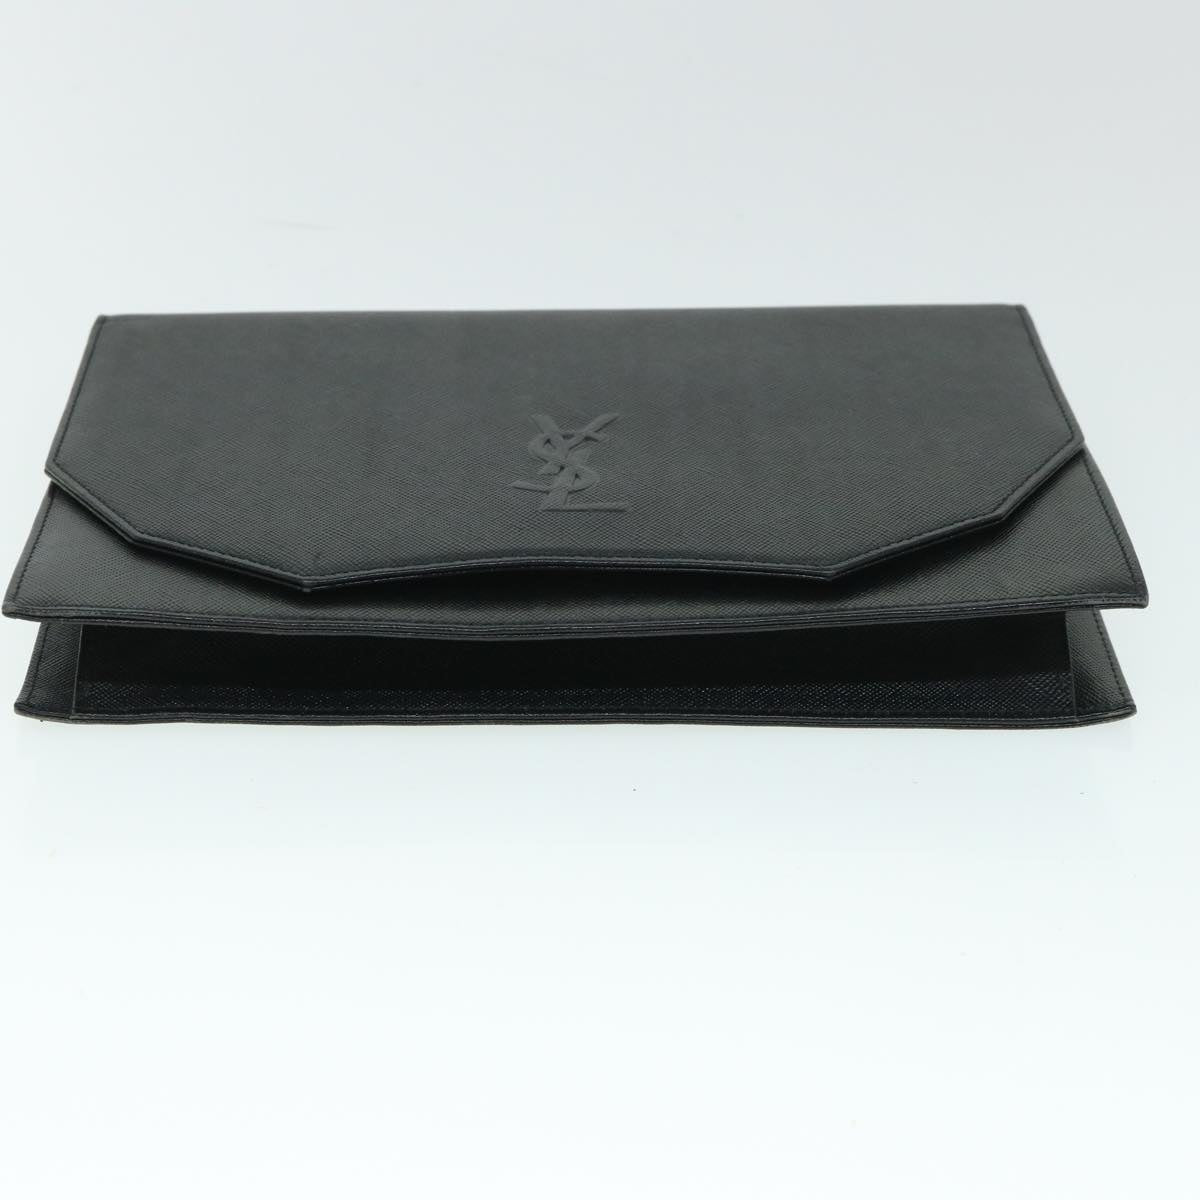 SAINT LAURENT Clutch Bag Leather Black Auth 54958